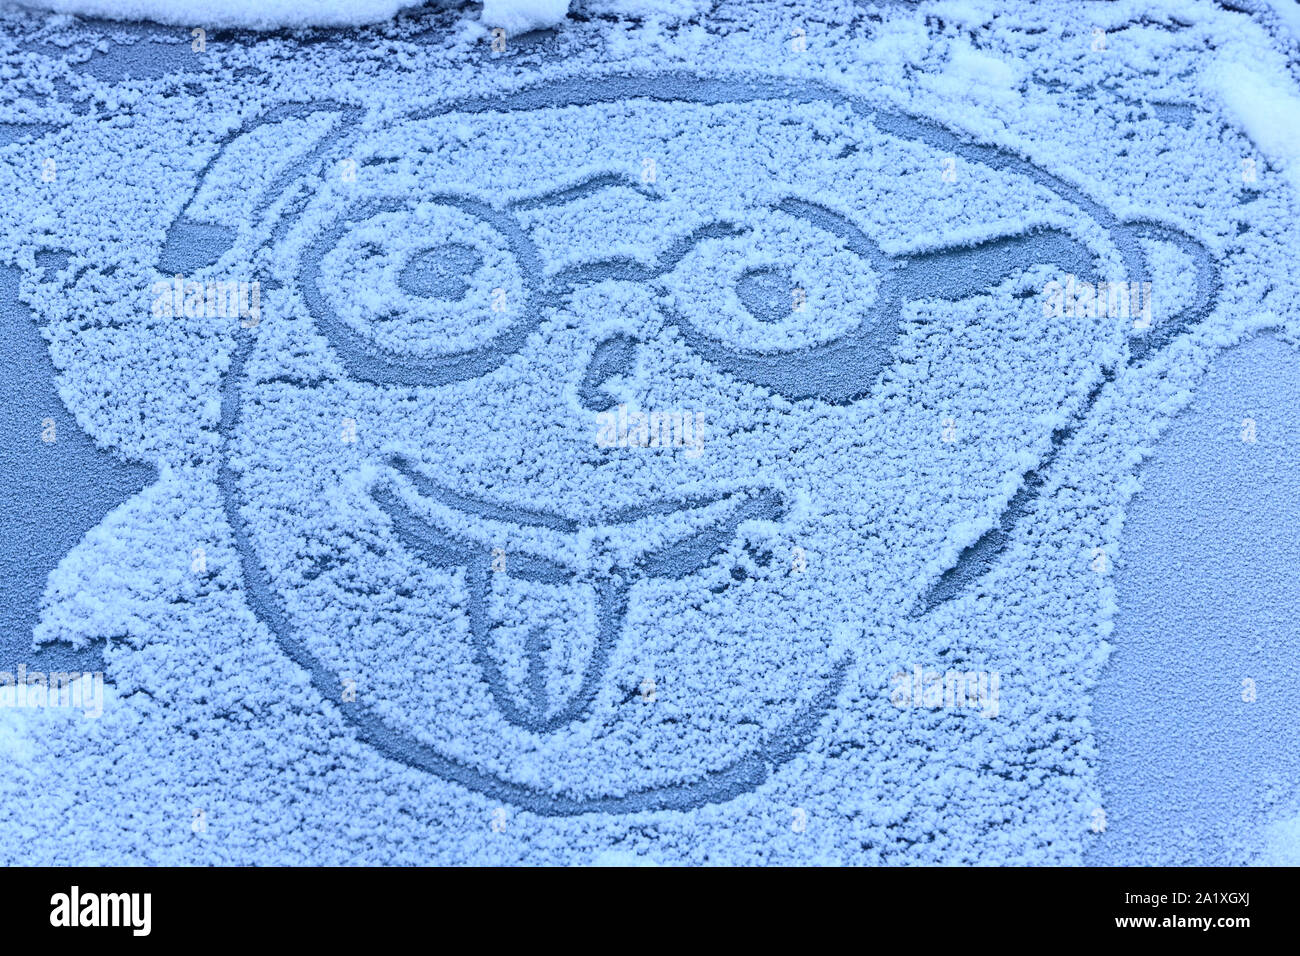 Illustration d'un personnage qui tire la langue sur le pare-brise d'une voiture enneigée. Chamonix. Haute-Savoie. France. Stock Photo